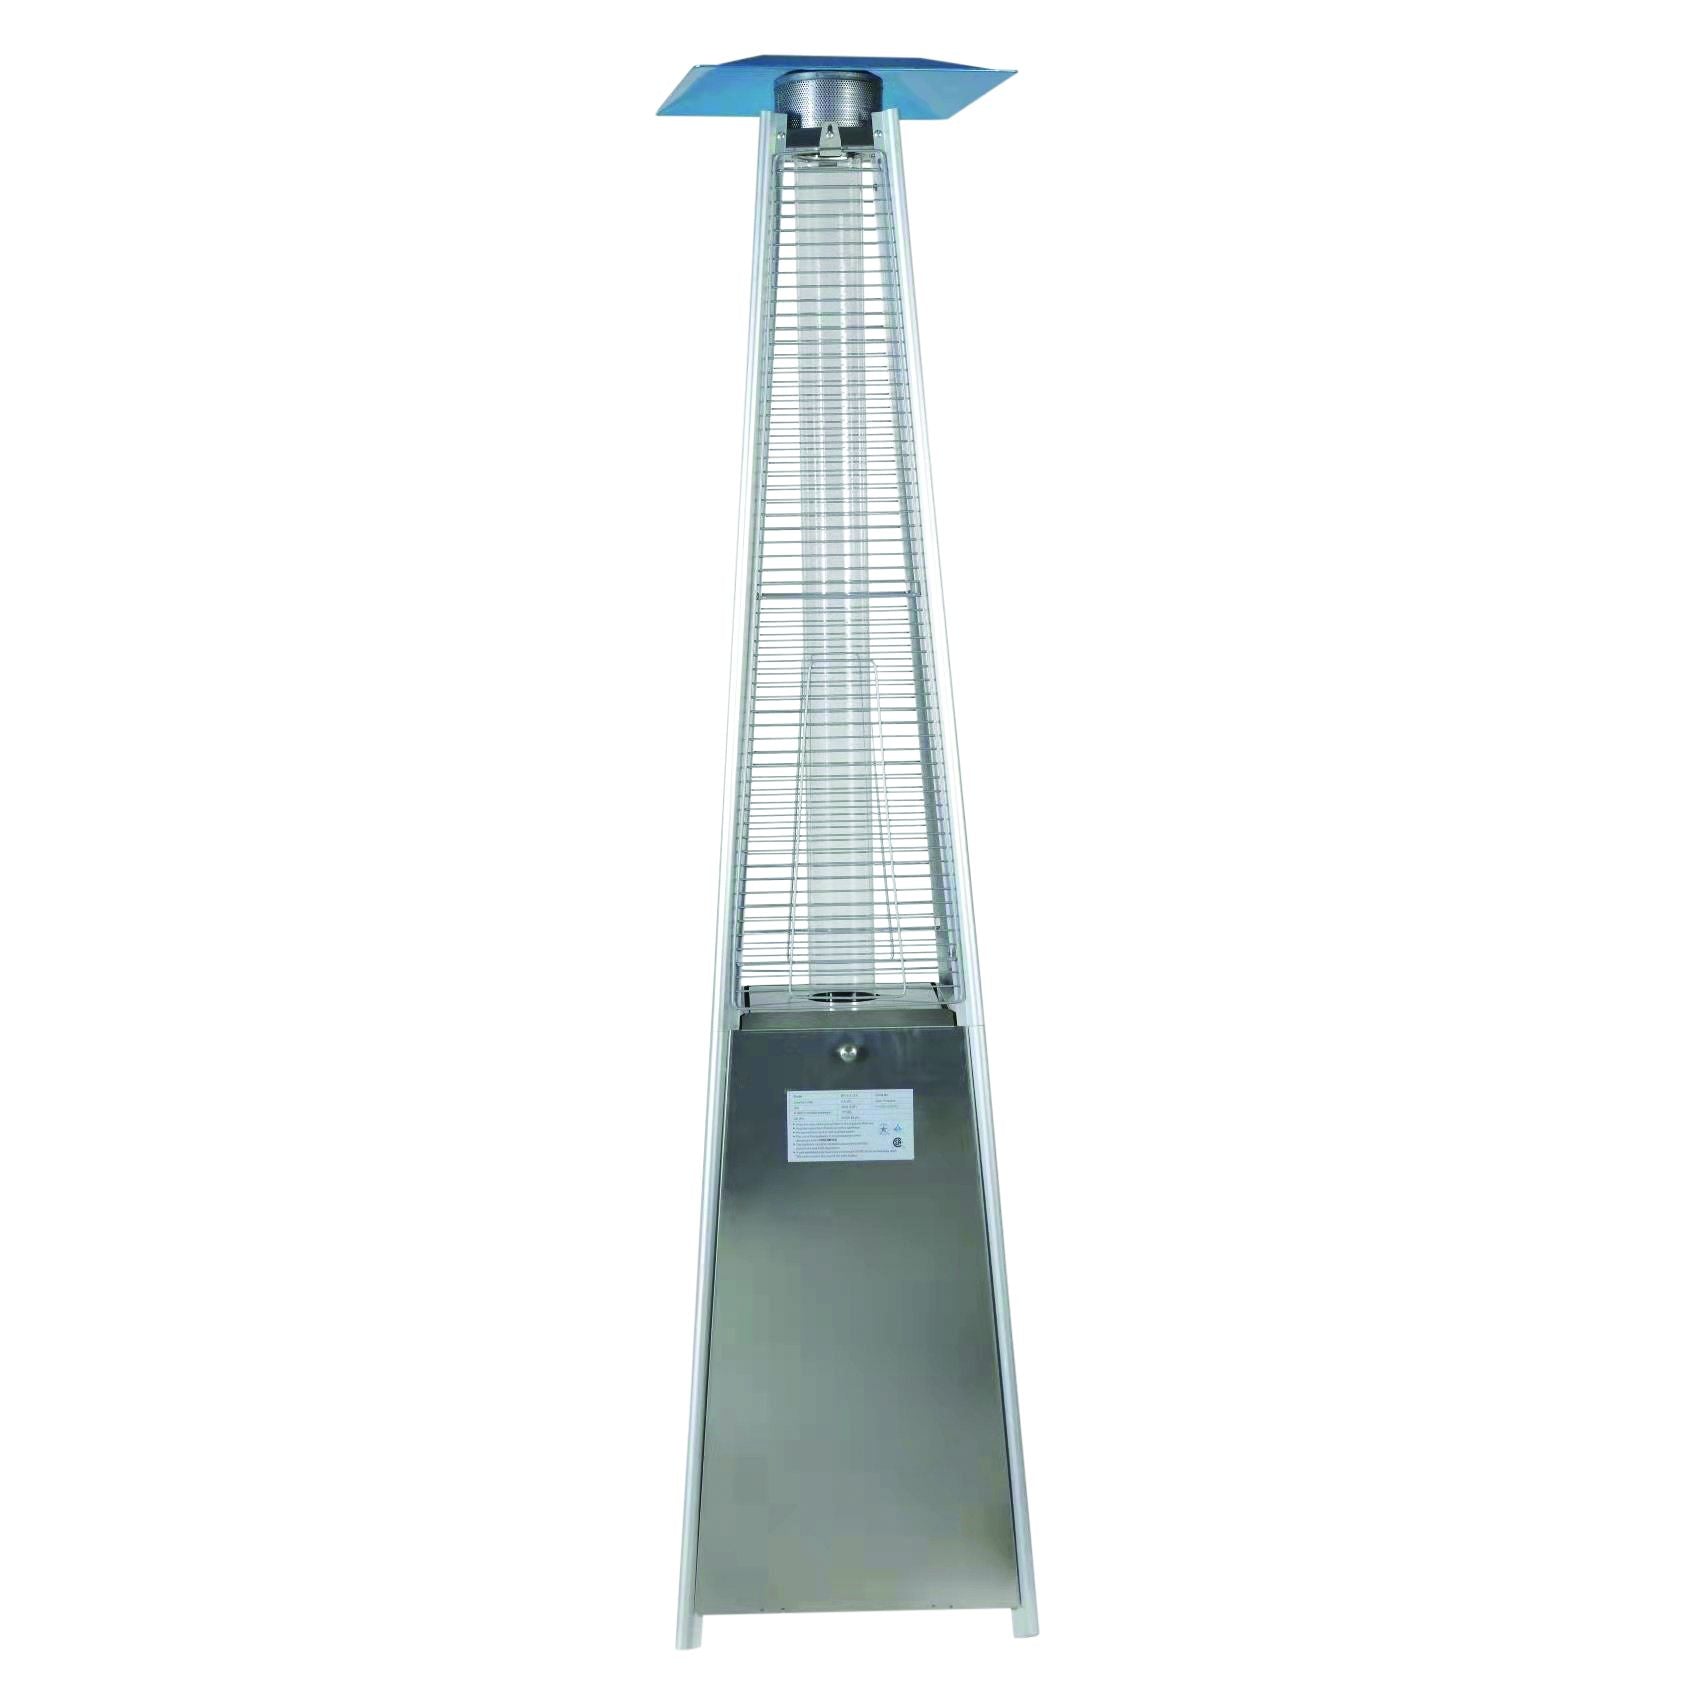 Willion PATIOHEAT1 - Stainless Steel Pyramid Patio Heater